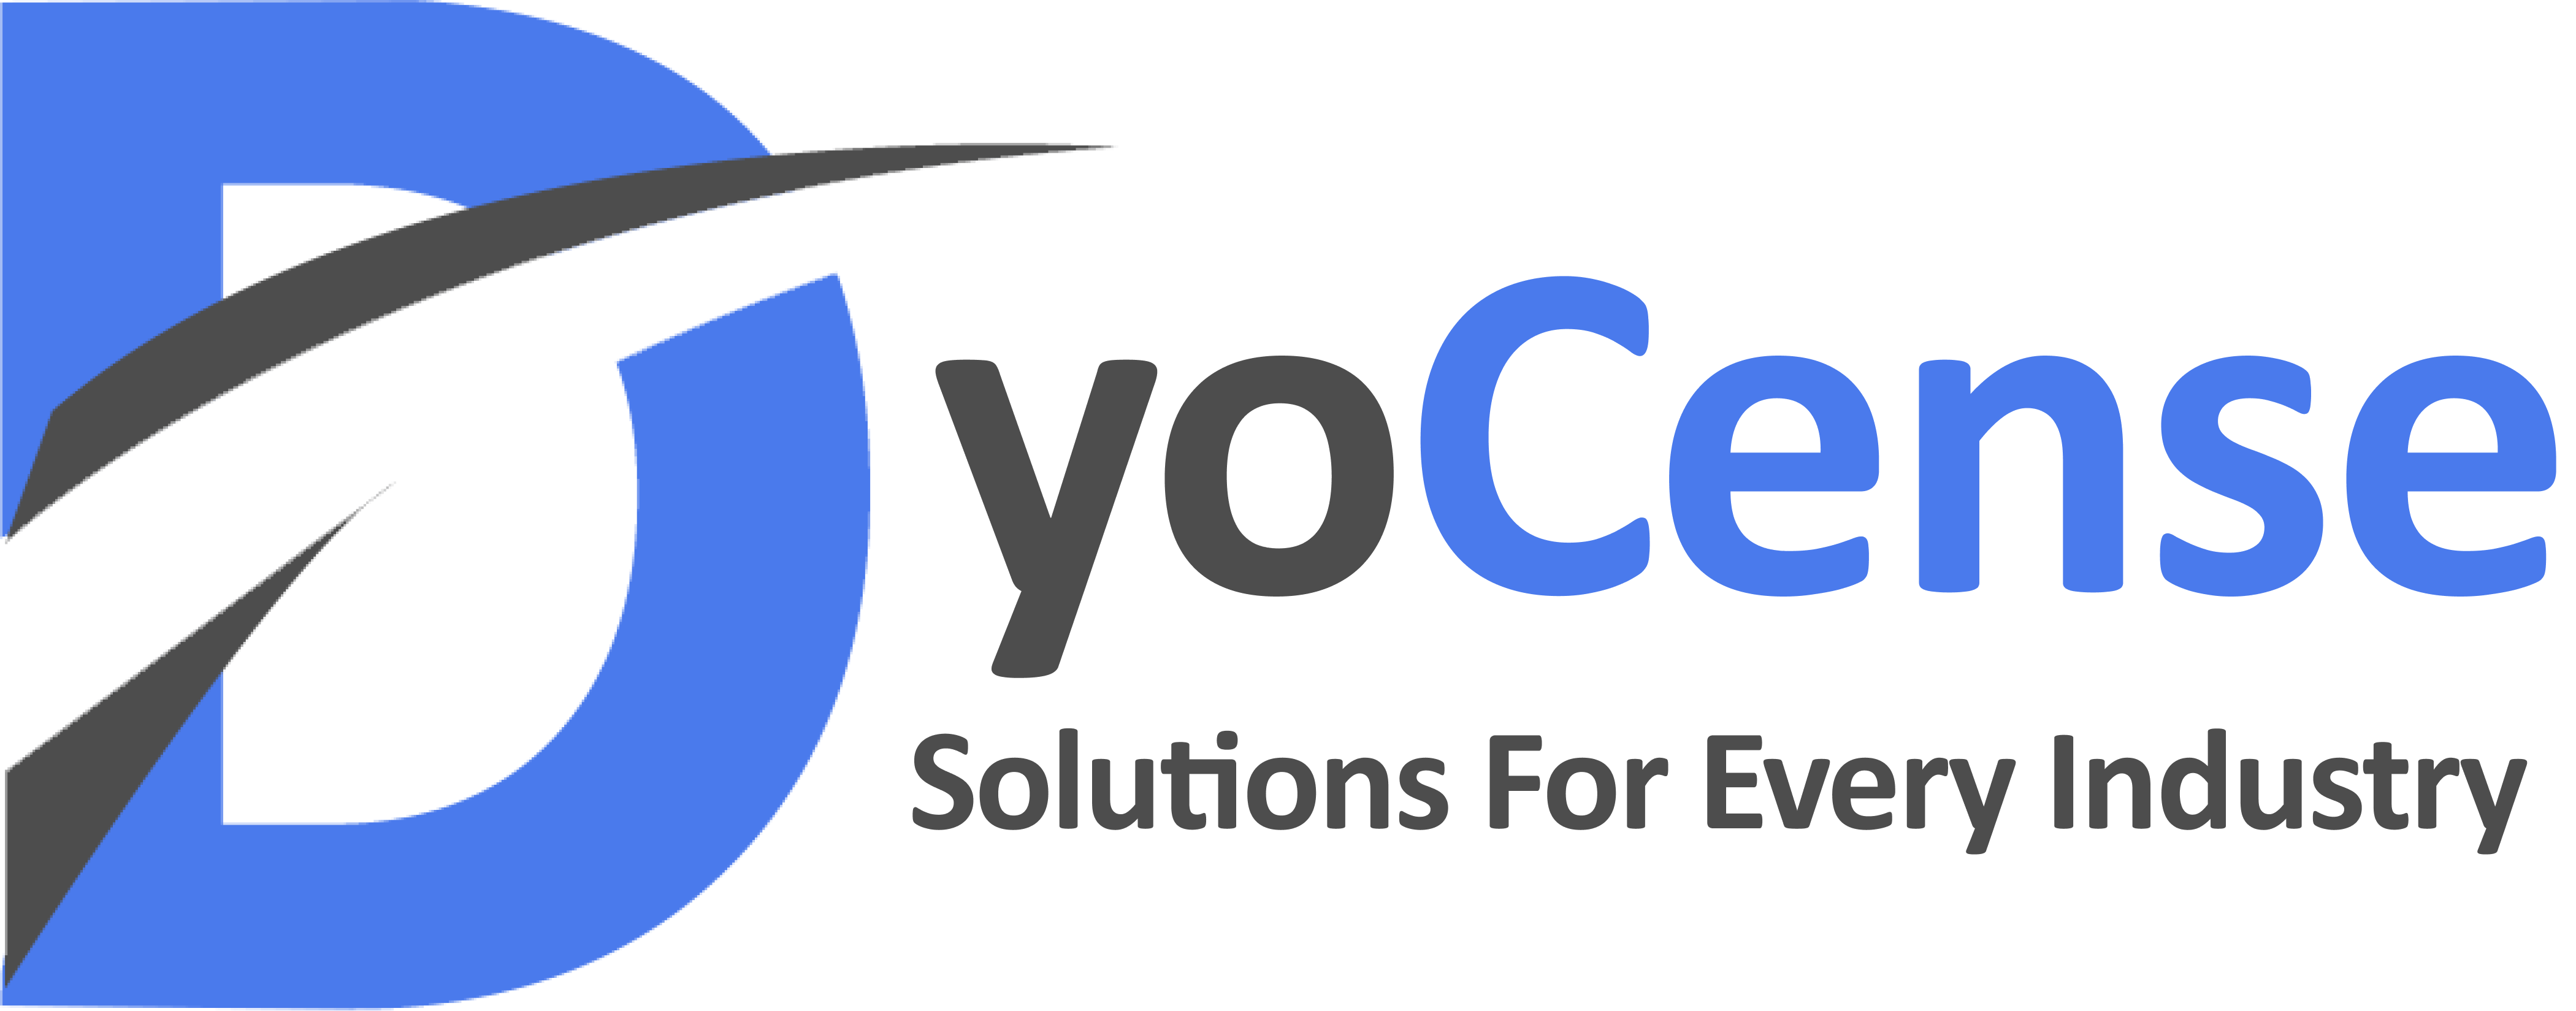 DyoCense Logo